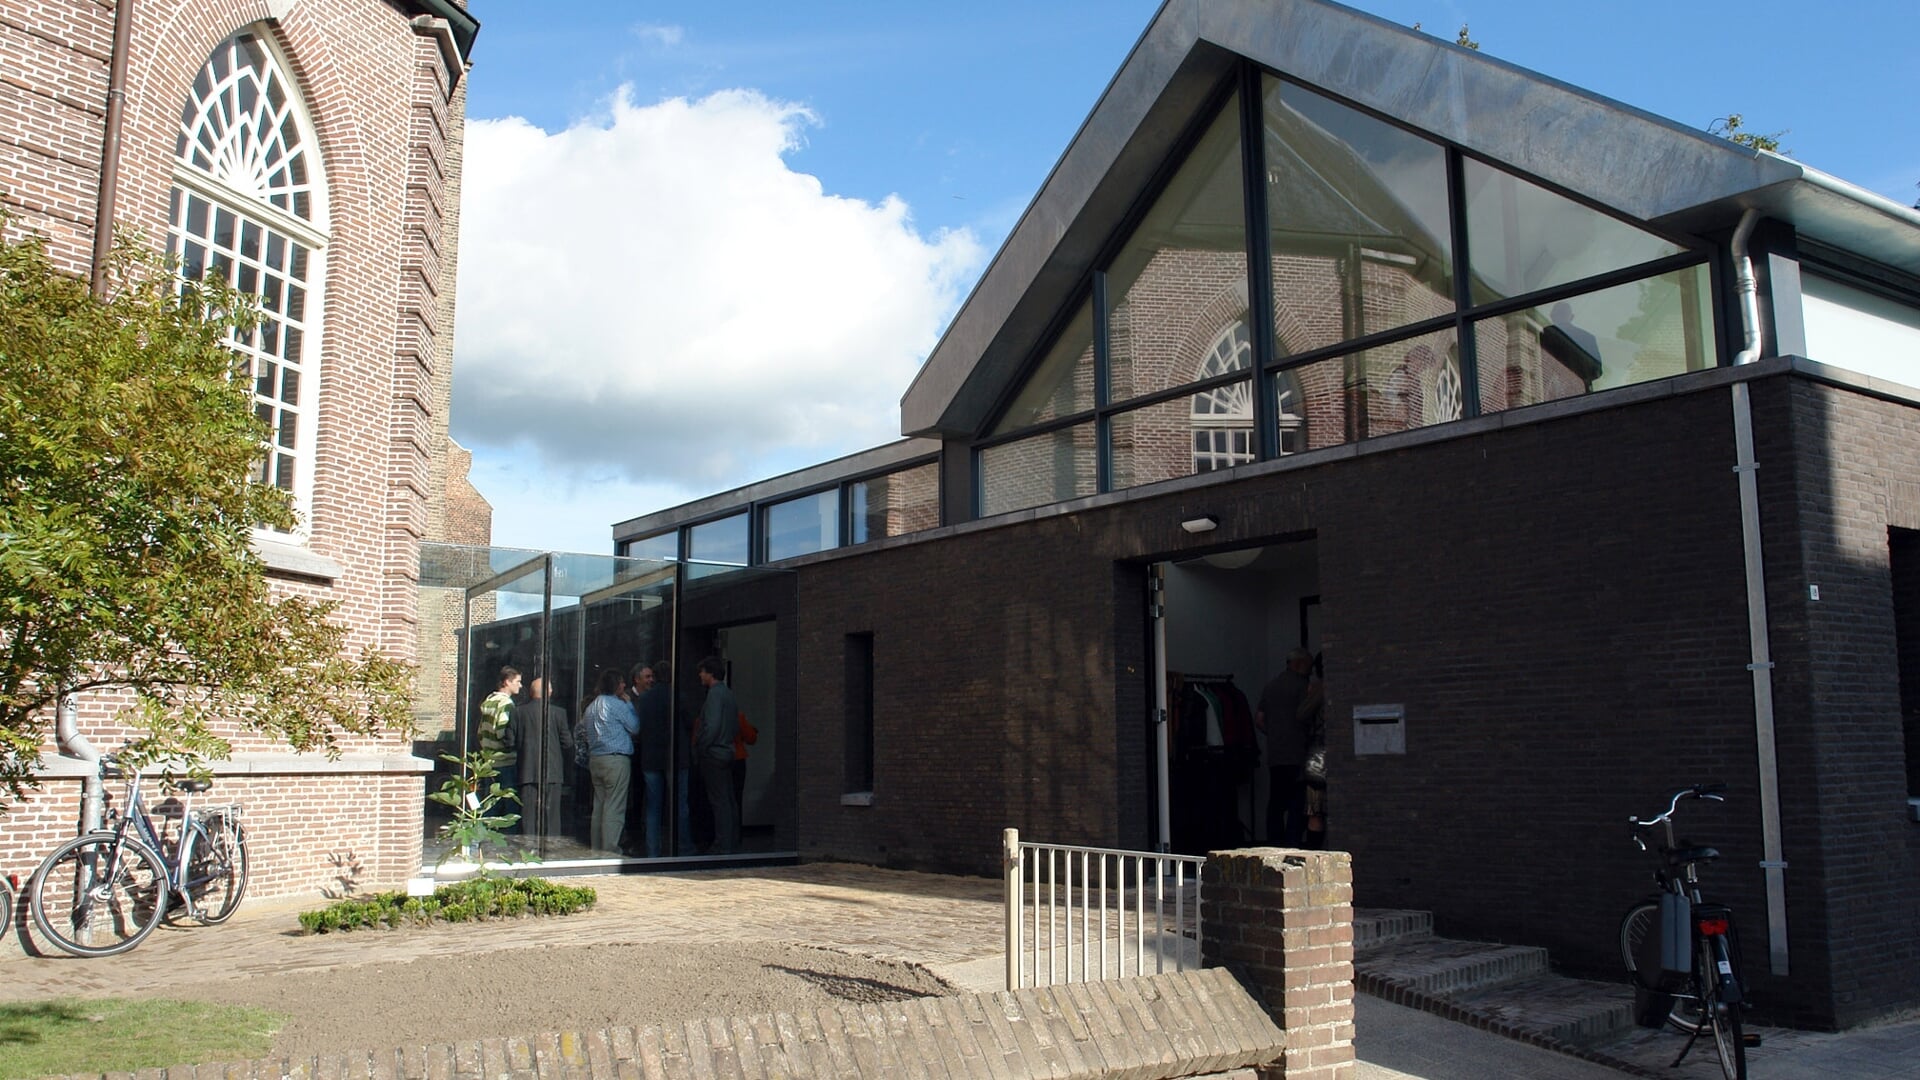 Ontmoetingscentrum De Schakel is te vinden aan de Clarissenstraat en is met een glazen gang verbonden met de naastgelegen kerk van de Protestantse Gemeente.